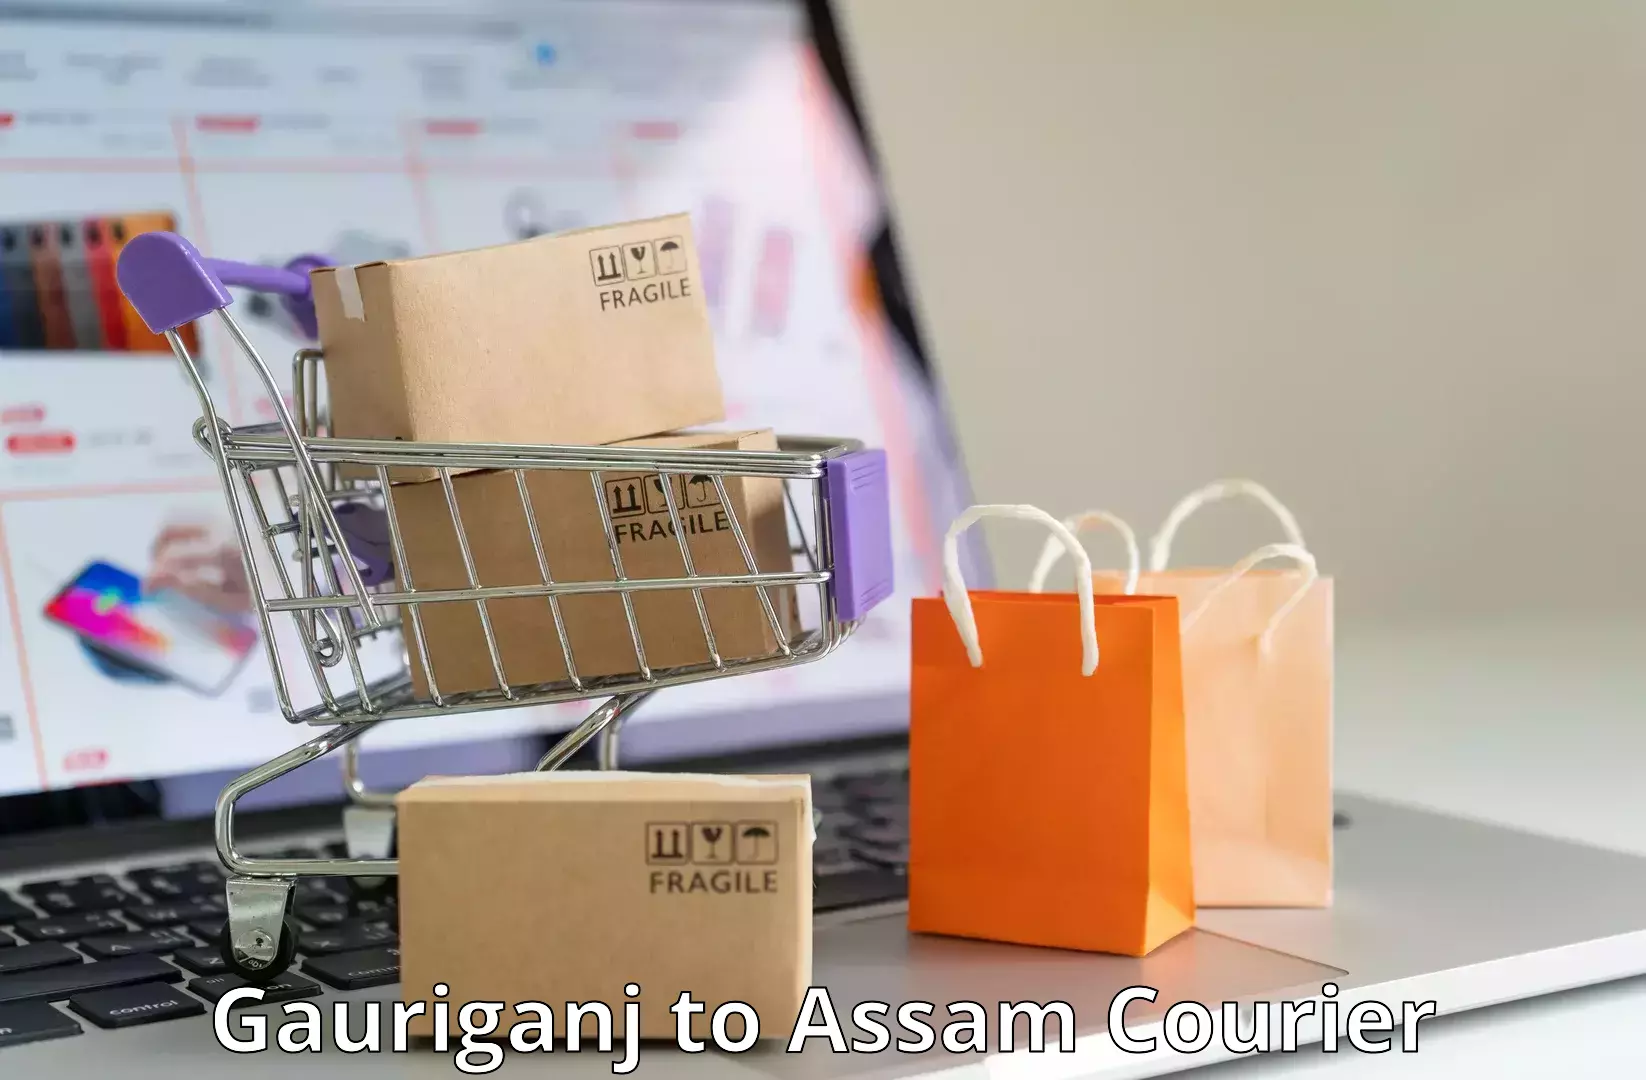 Full-service courier options Gauriganj to Kokrajhar